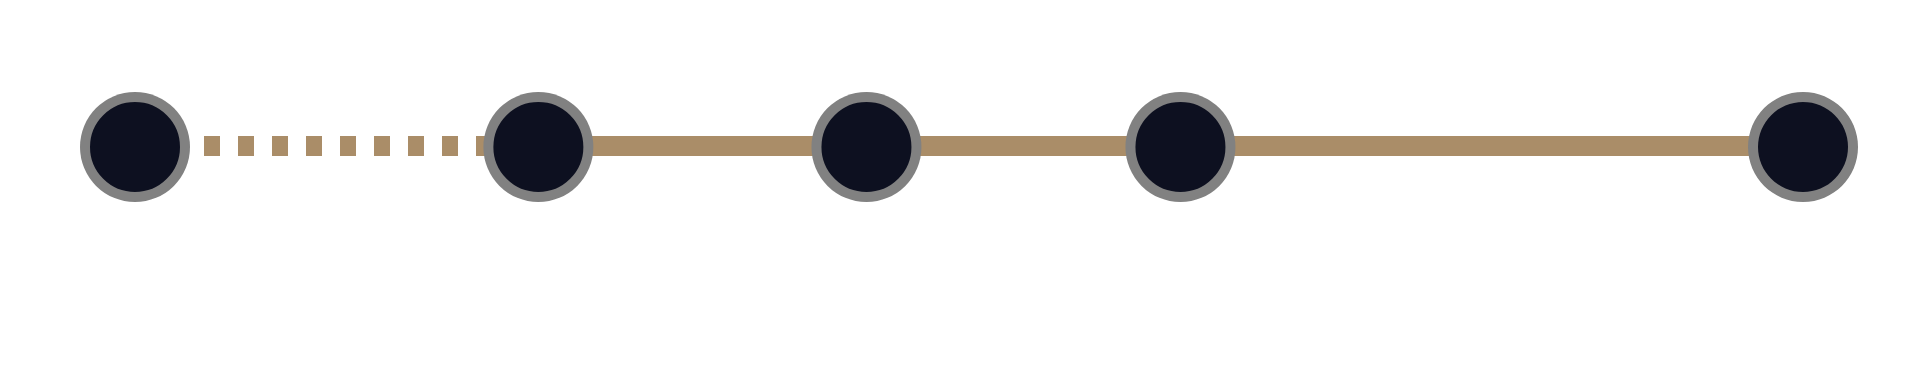 大阪 難波駅